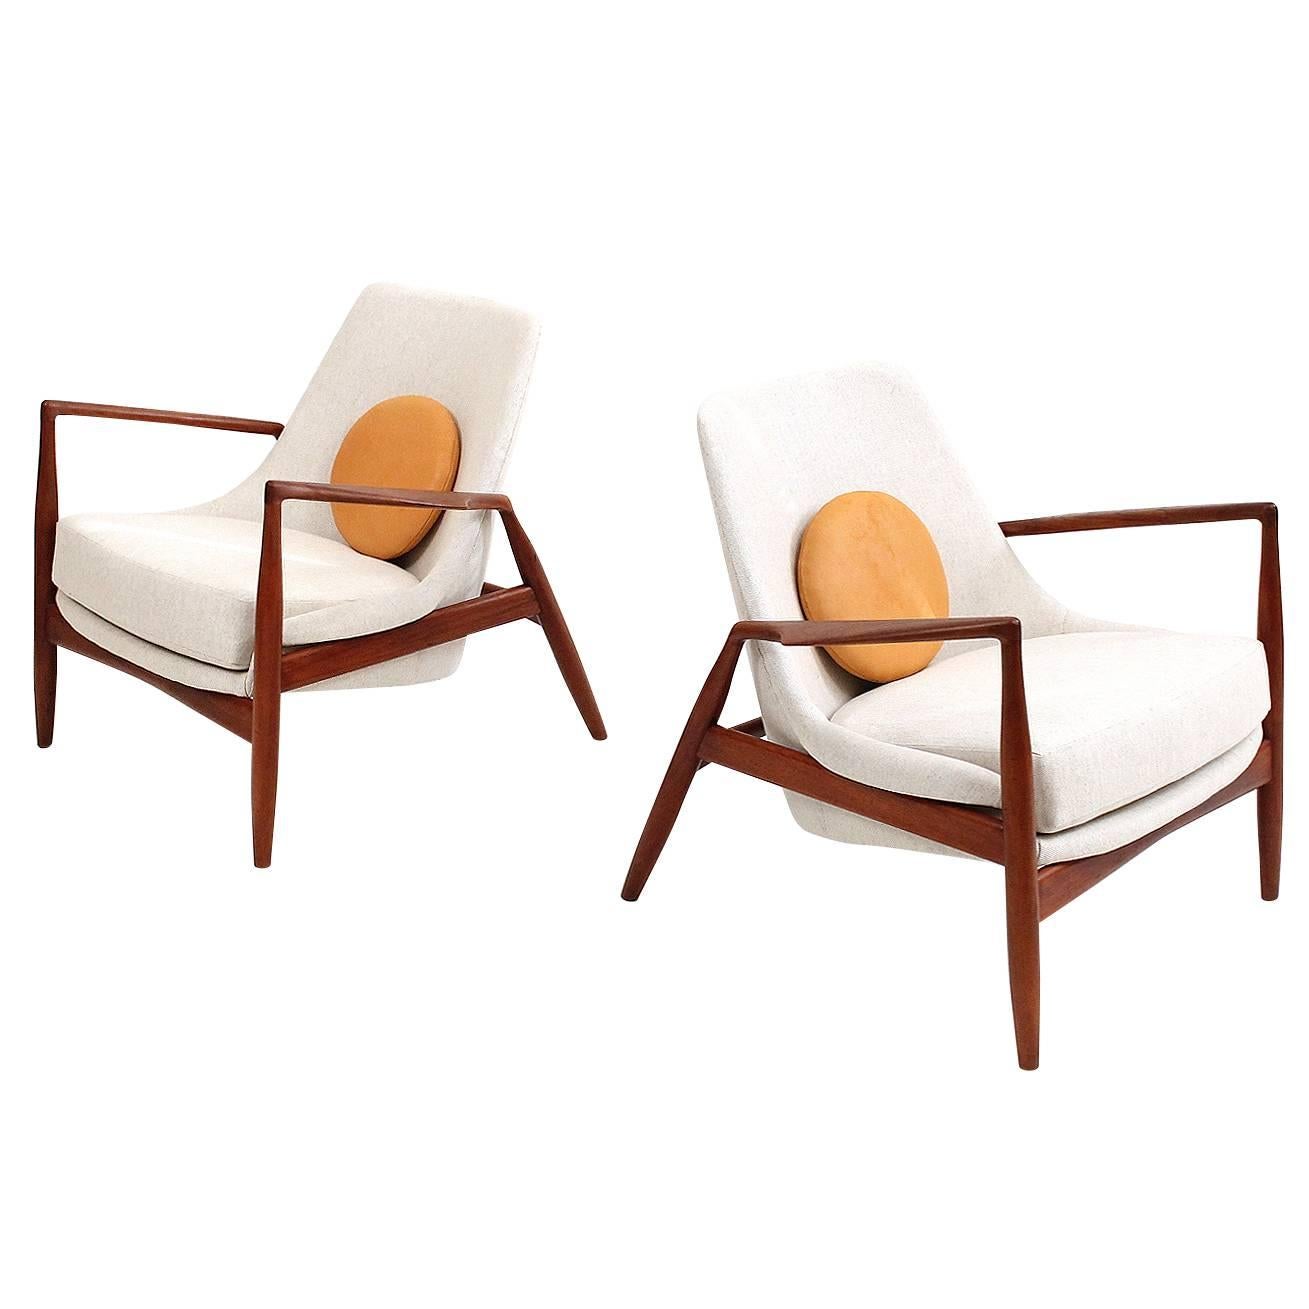 Pair of Teak “Seal" Lounge Chairs by Kofod-Larsen